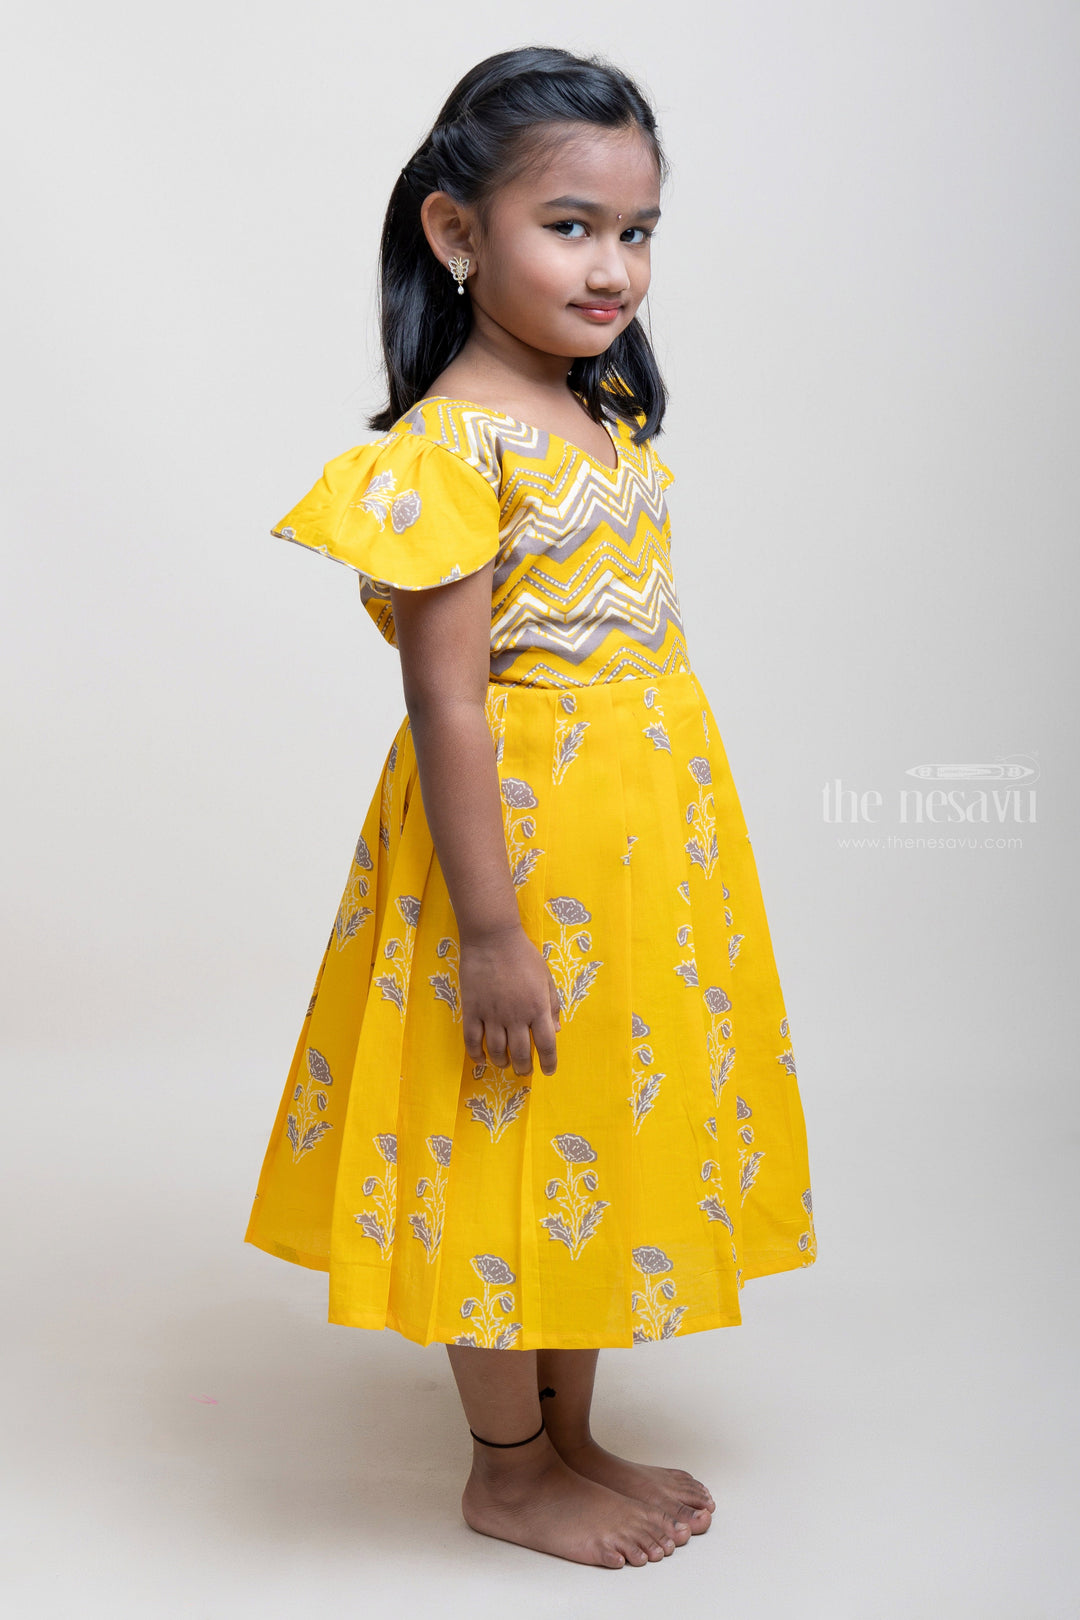 The Nesavu Girls Cotton Frock Designer Yellow Cotton Frock With Cap Sleeves For Girls psr silks Nesavu